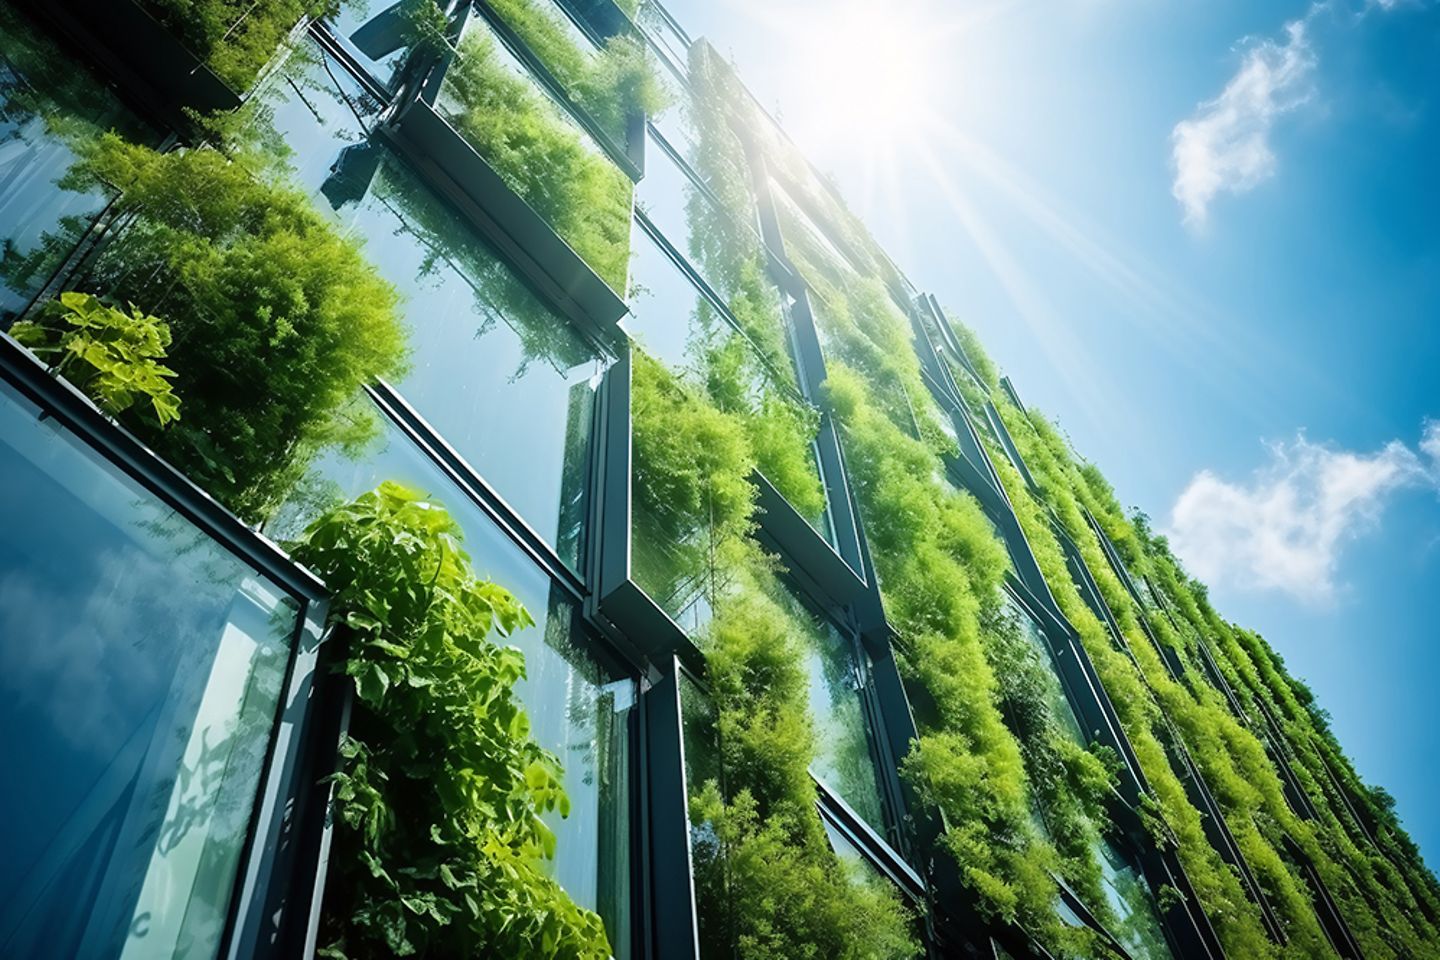 Immeuble de bureaux avec façade vitrée végétalisée sur fond de ciel bleu